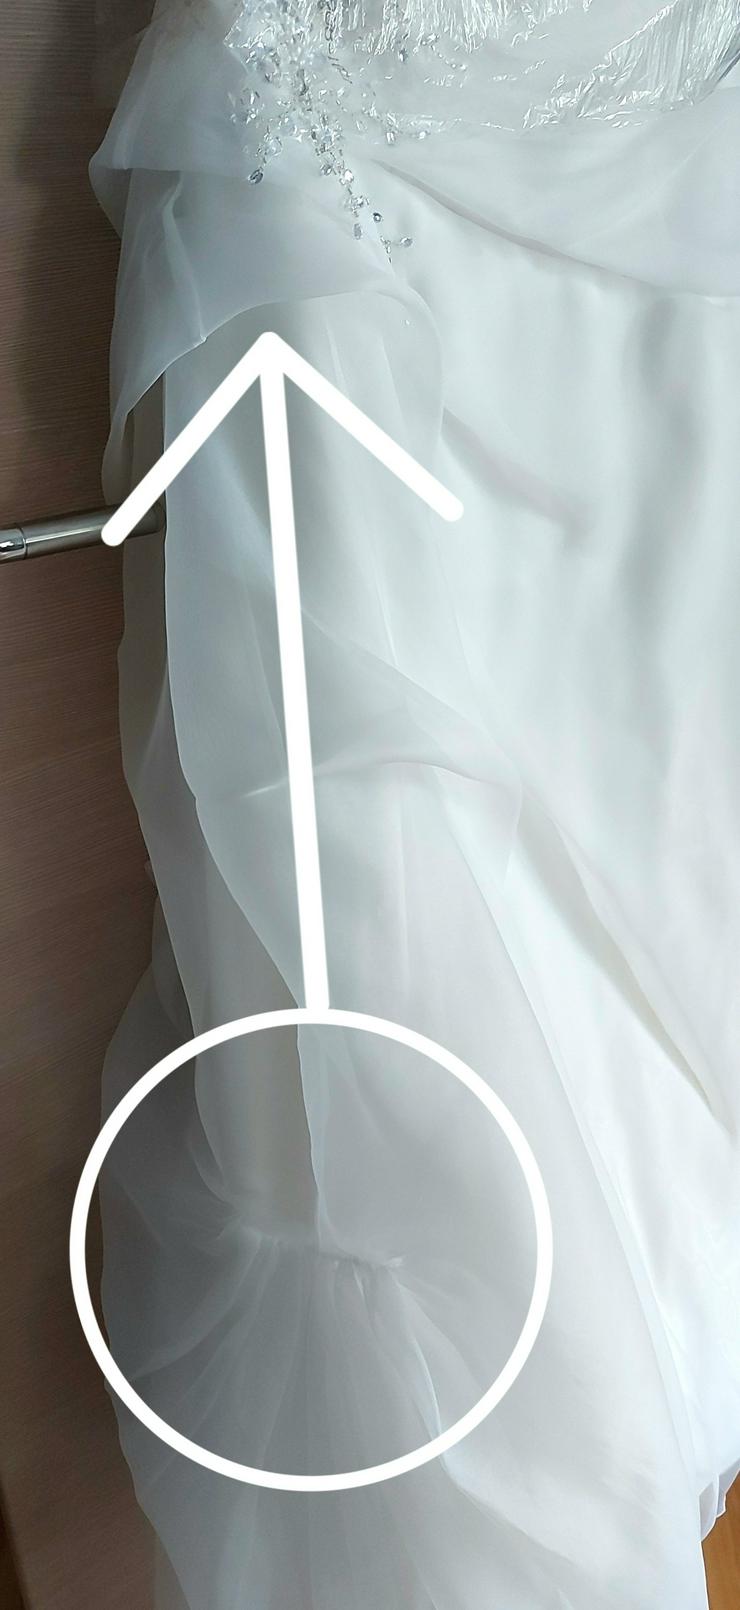 Bild 5: Brautkleid Creme weiß Gr. 44 46 inkl. Reifrock frisch gereinigt